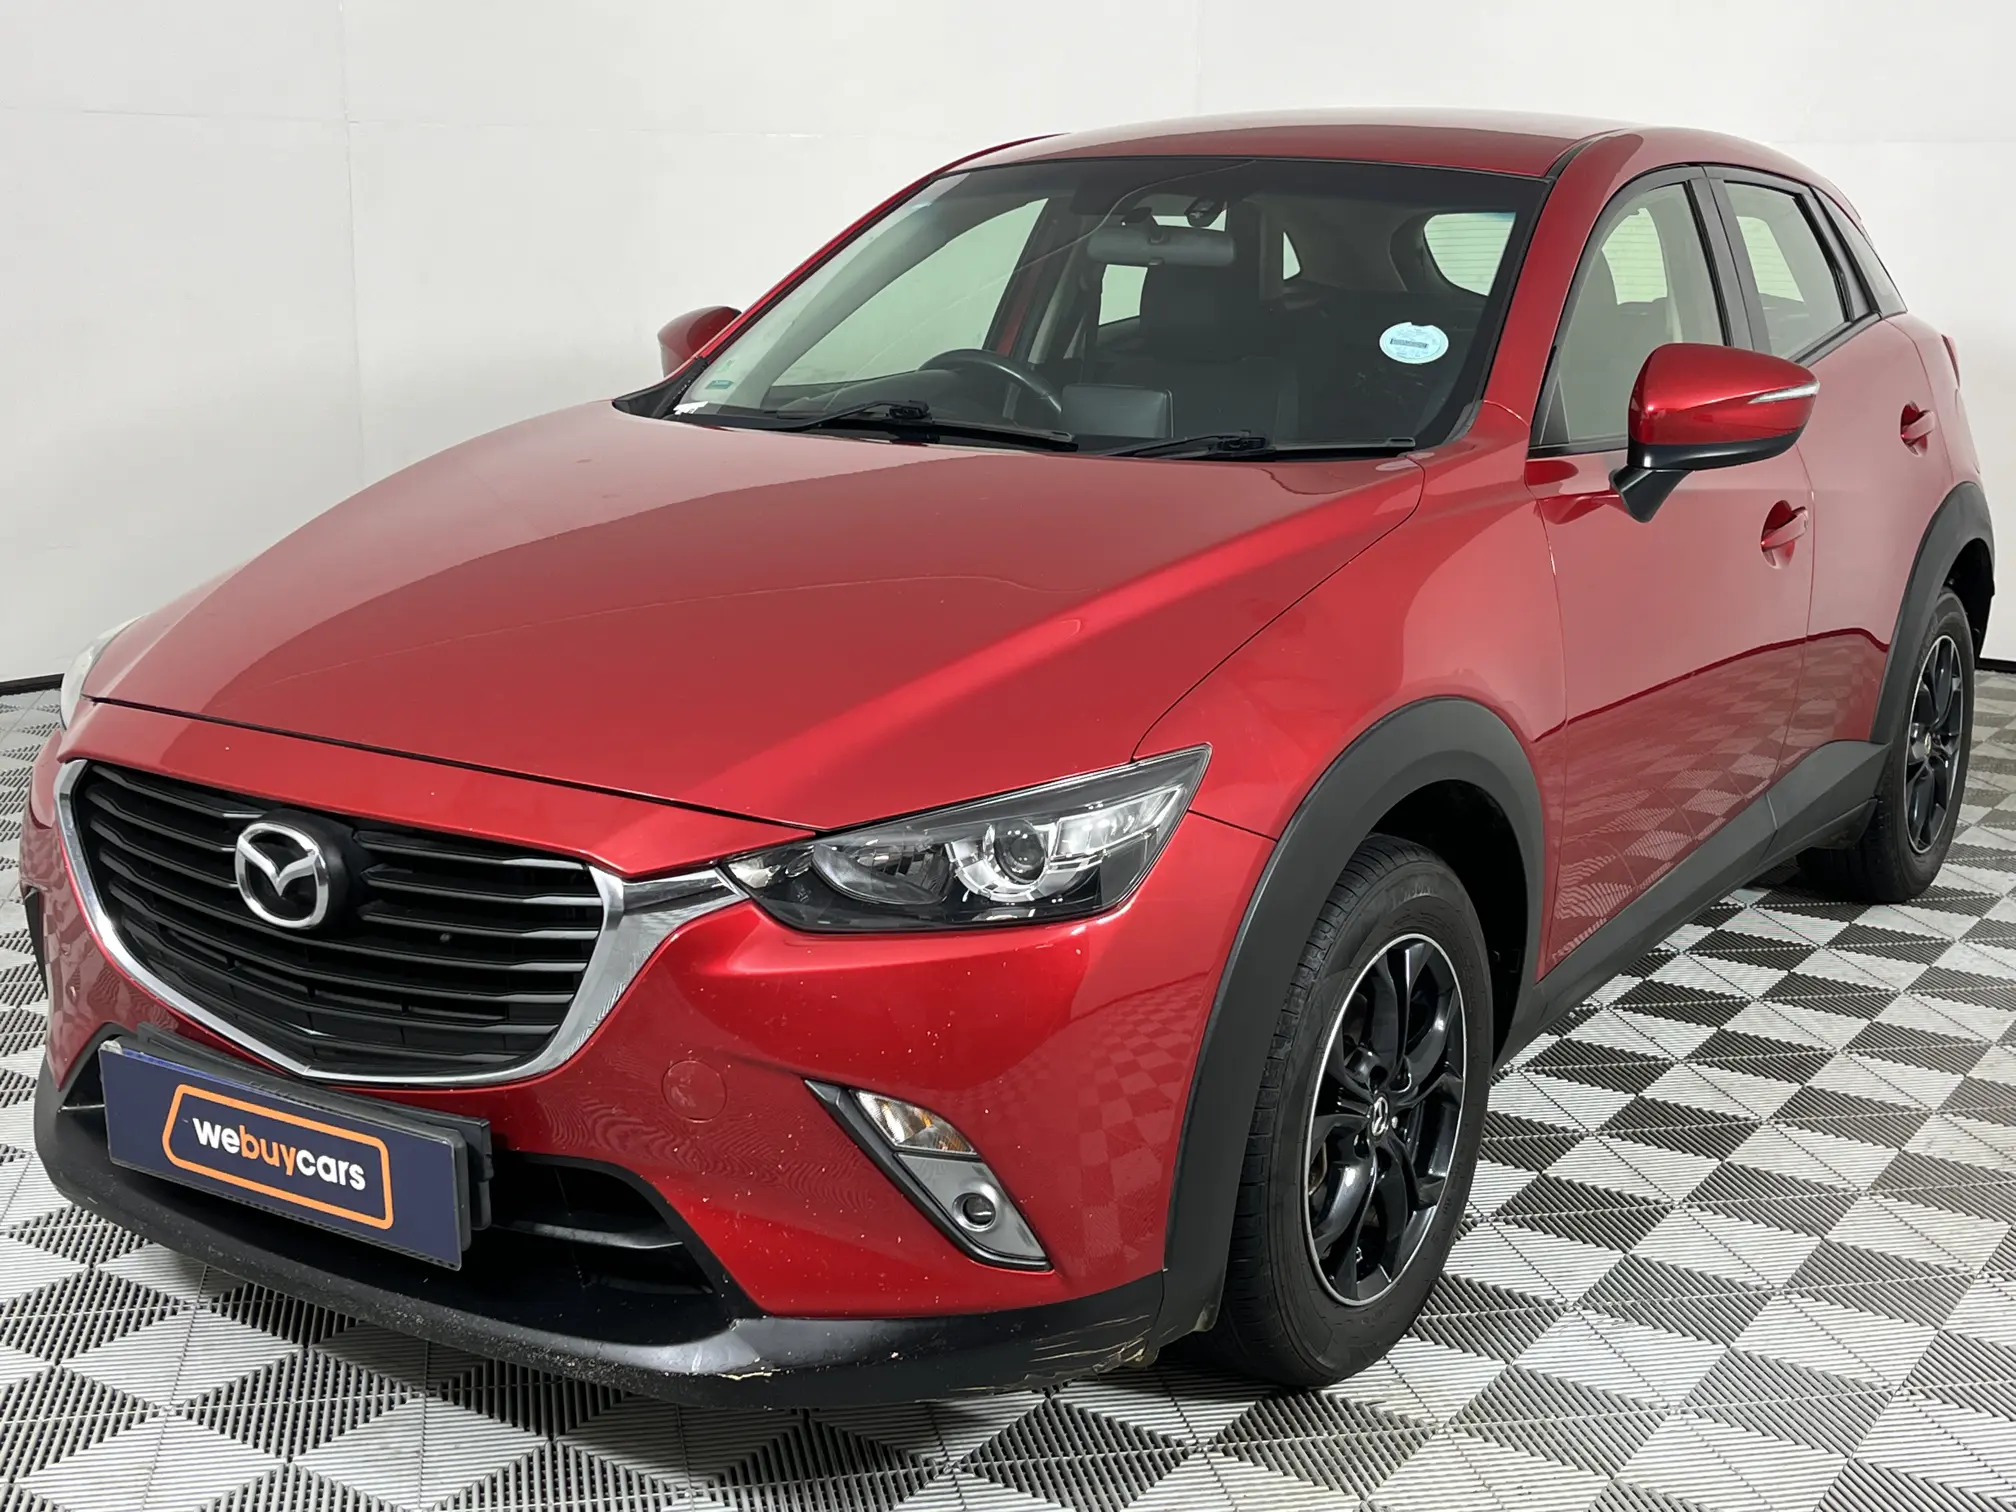 2017 Mazda CX-3 2.0 Dynamic